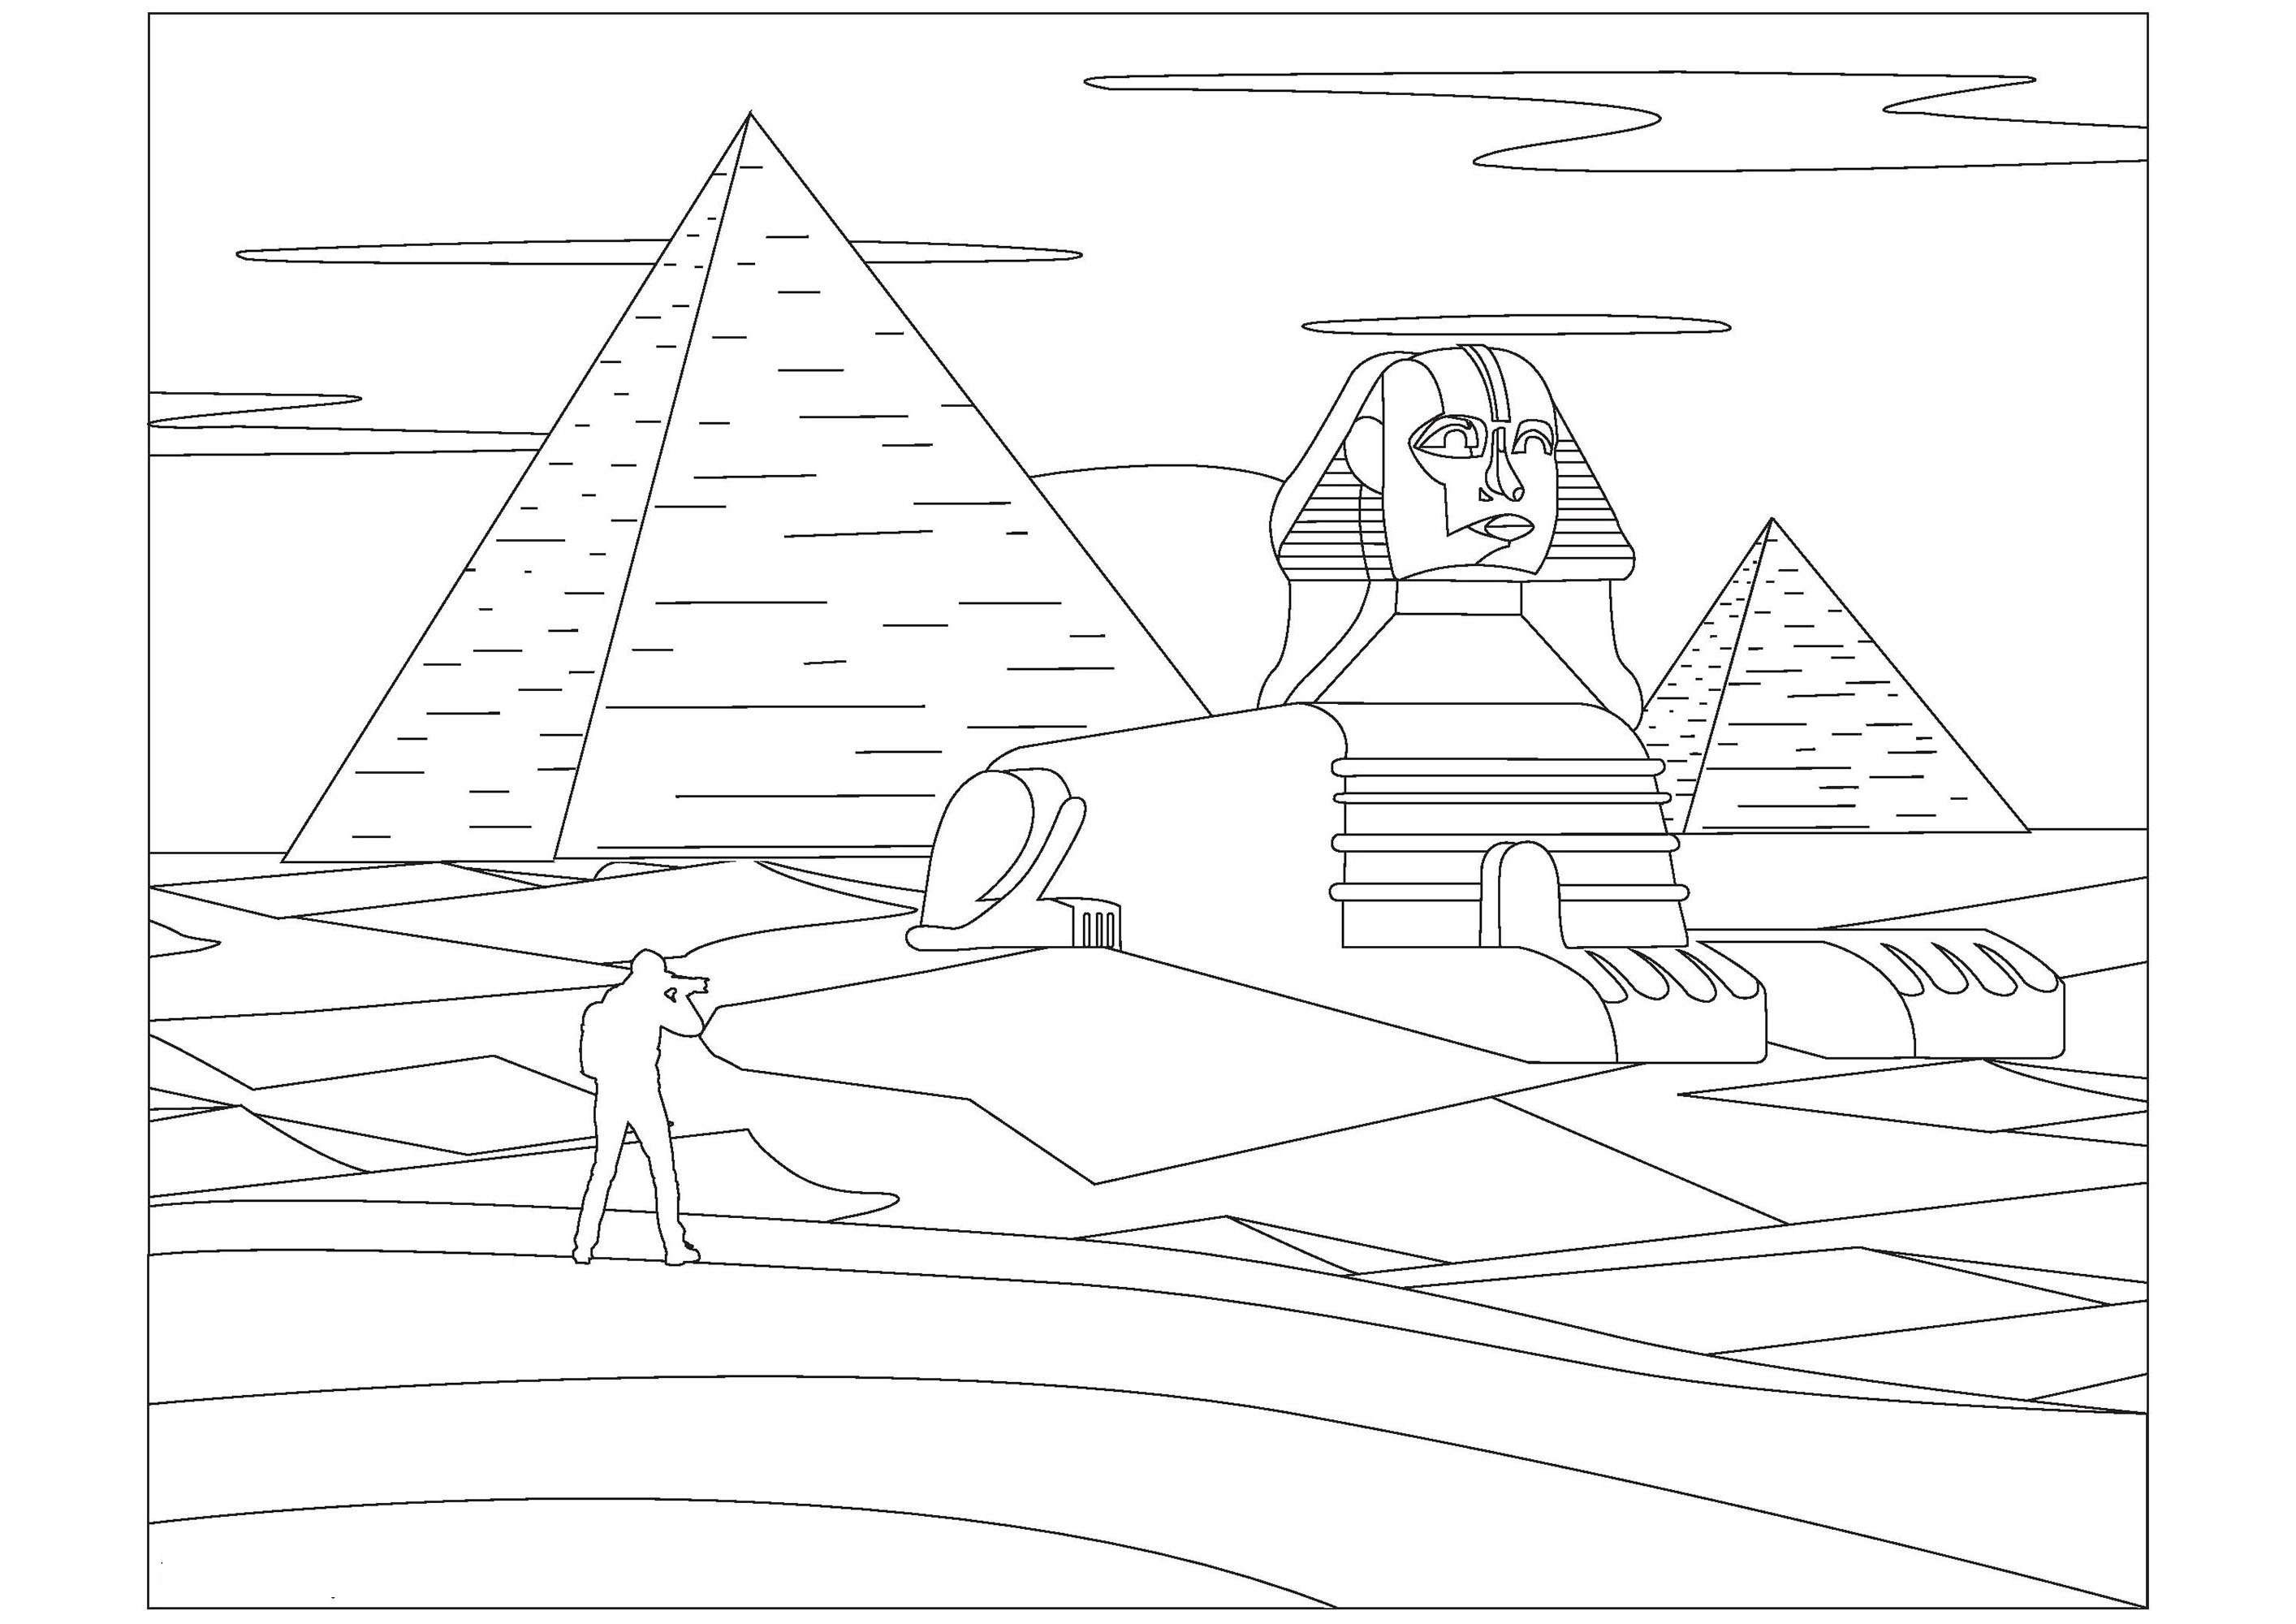 Coloriage du Sphinx et des Pyramides en Egypte. Le Sphinx est une statue en pierre qui a été construite il y a très longtemps en Égypte. Il a la tête d'un pharaon et le corps d'un lion. Les Pyramides sont des bâtiments en pierre très grands et très anciens construits en Égypte aussi, elles servaient de tombeaux pour les Pharaons.